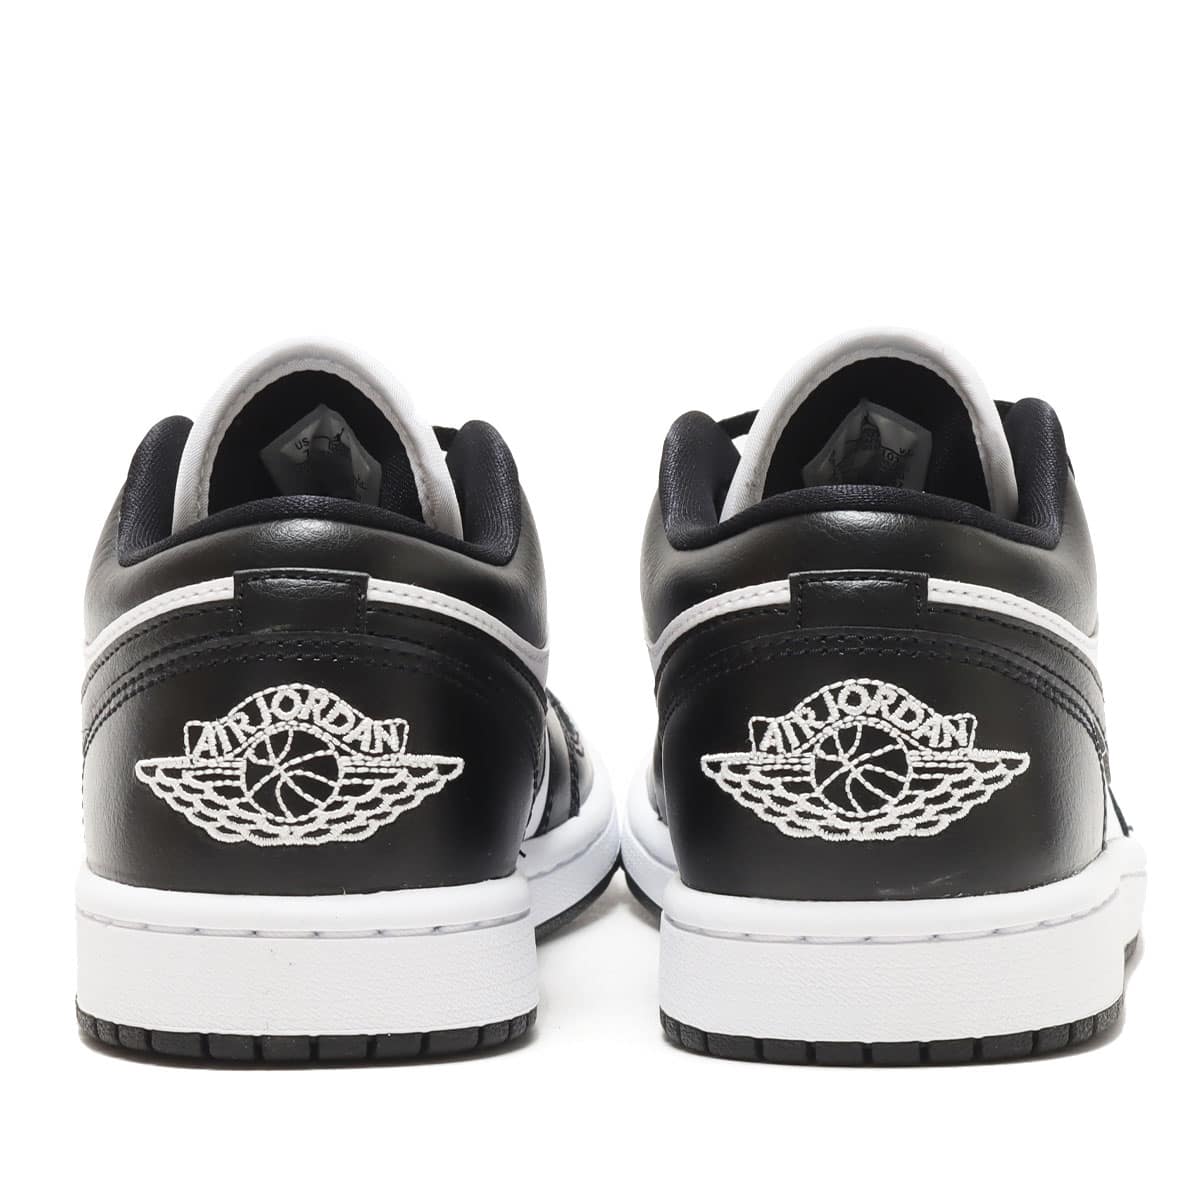 Nike WMNS Air Jordan 1 Low "White/Black